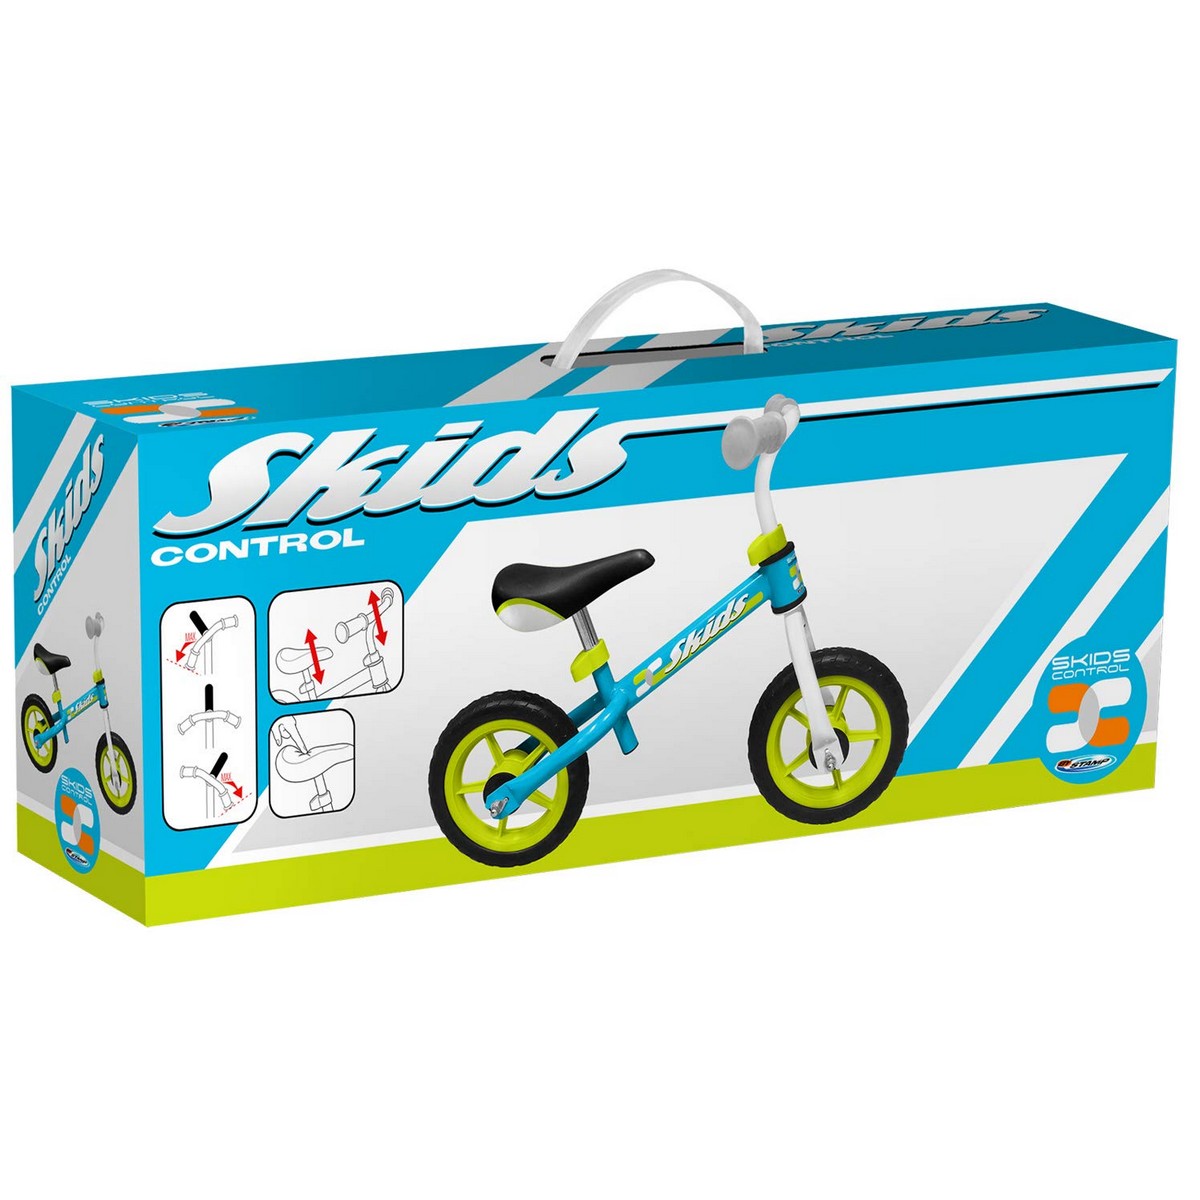 Детский велосипед Skids Control Синий Сталь